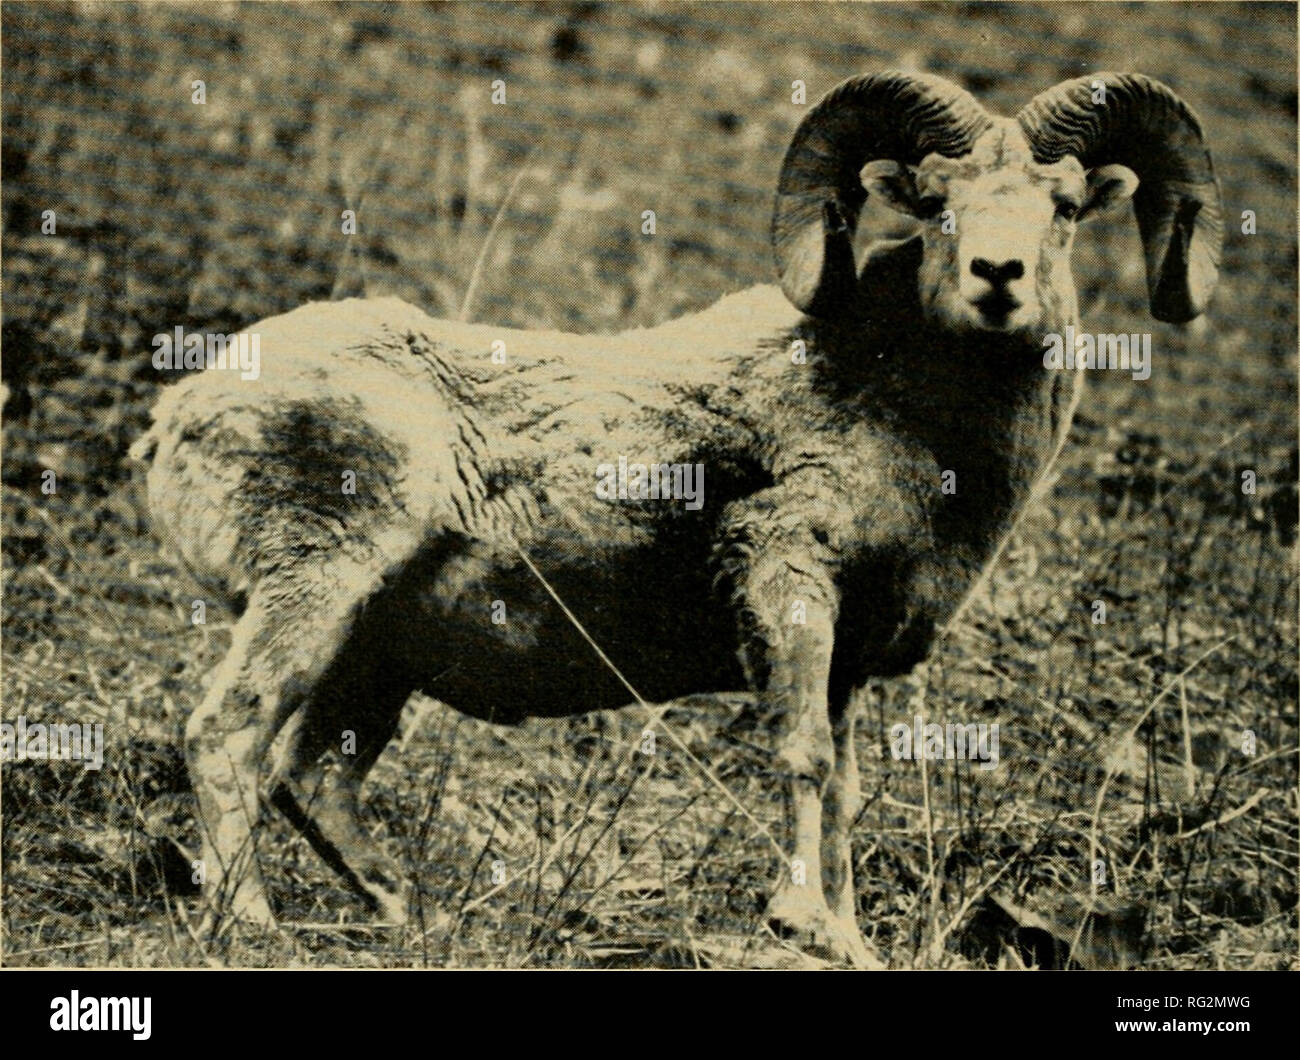 The Canadian field-naturalist. Natural history. 340 The Canadian  Field-Naturalist Vol. 84. Rocky Mountain Bighorn Sheep on Palliser Range,  Banff National Park. ^ Au£NBr Pass 4 Miles ^ *AsstiiiBoiiiE Pass 5 Miles